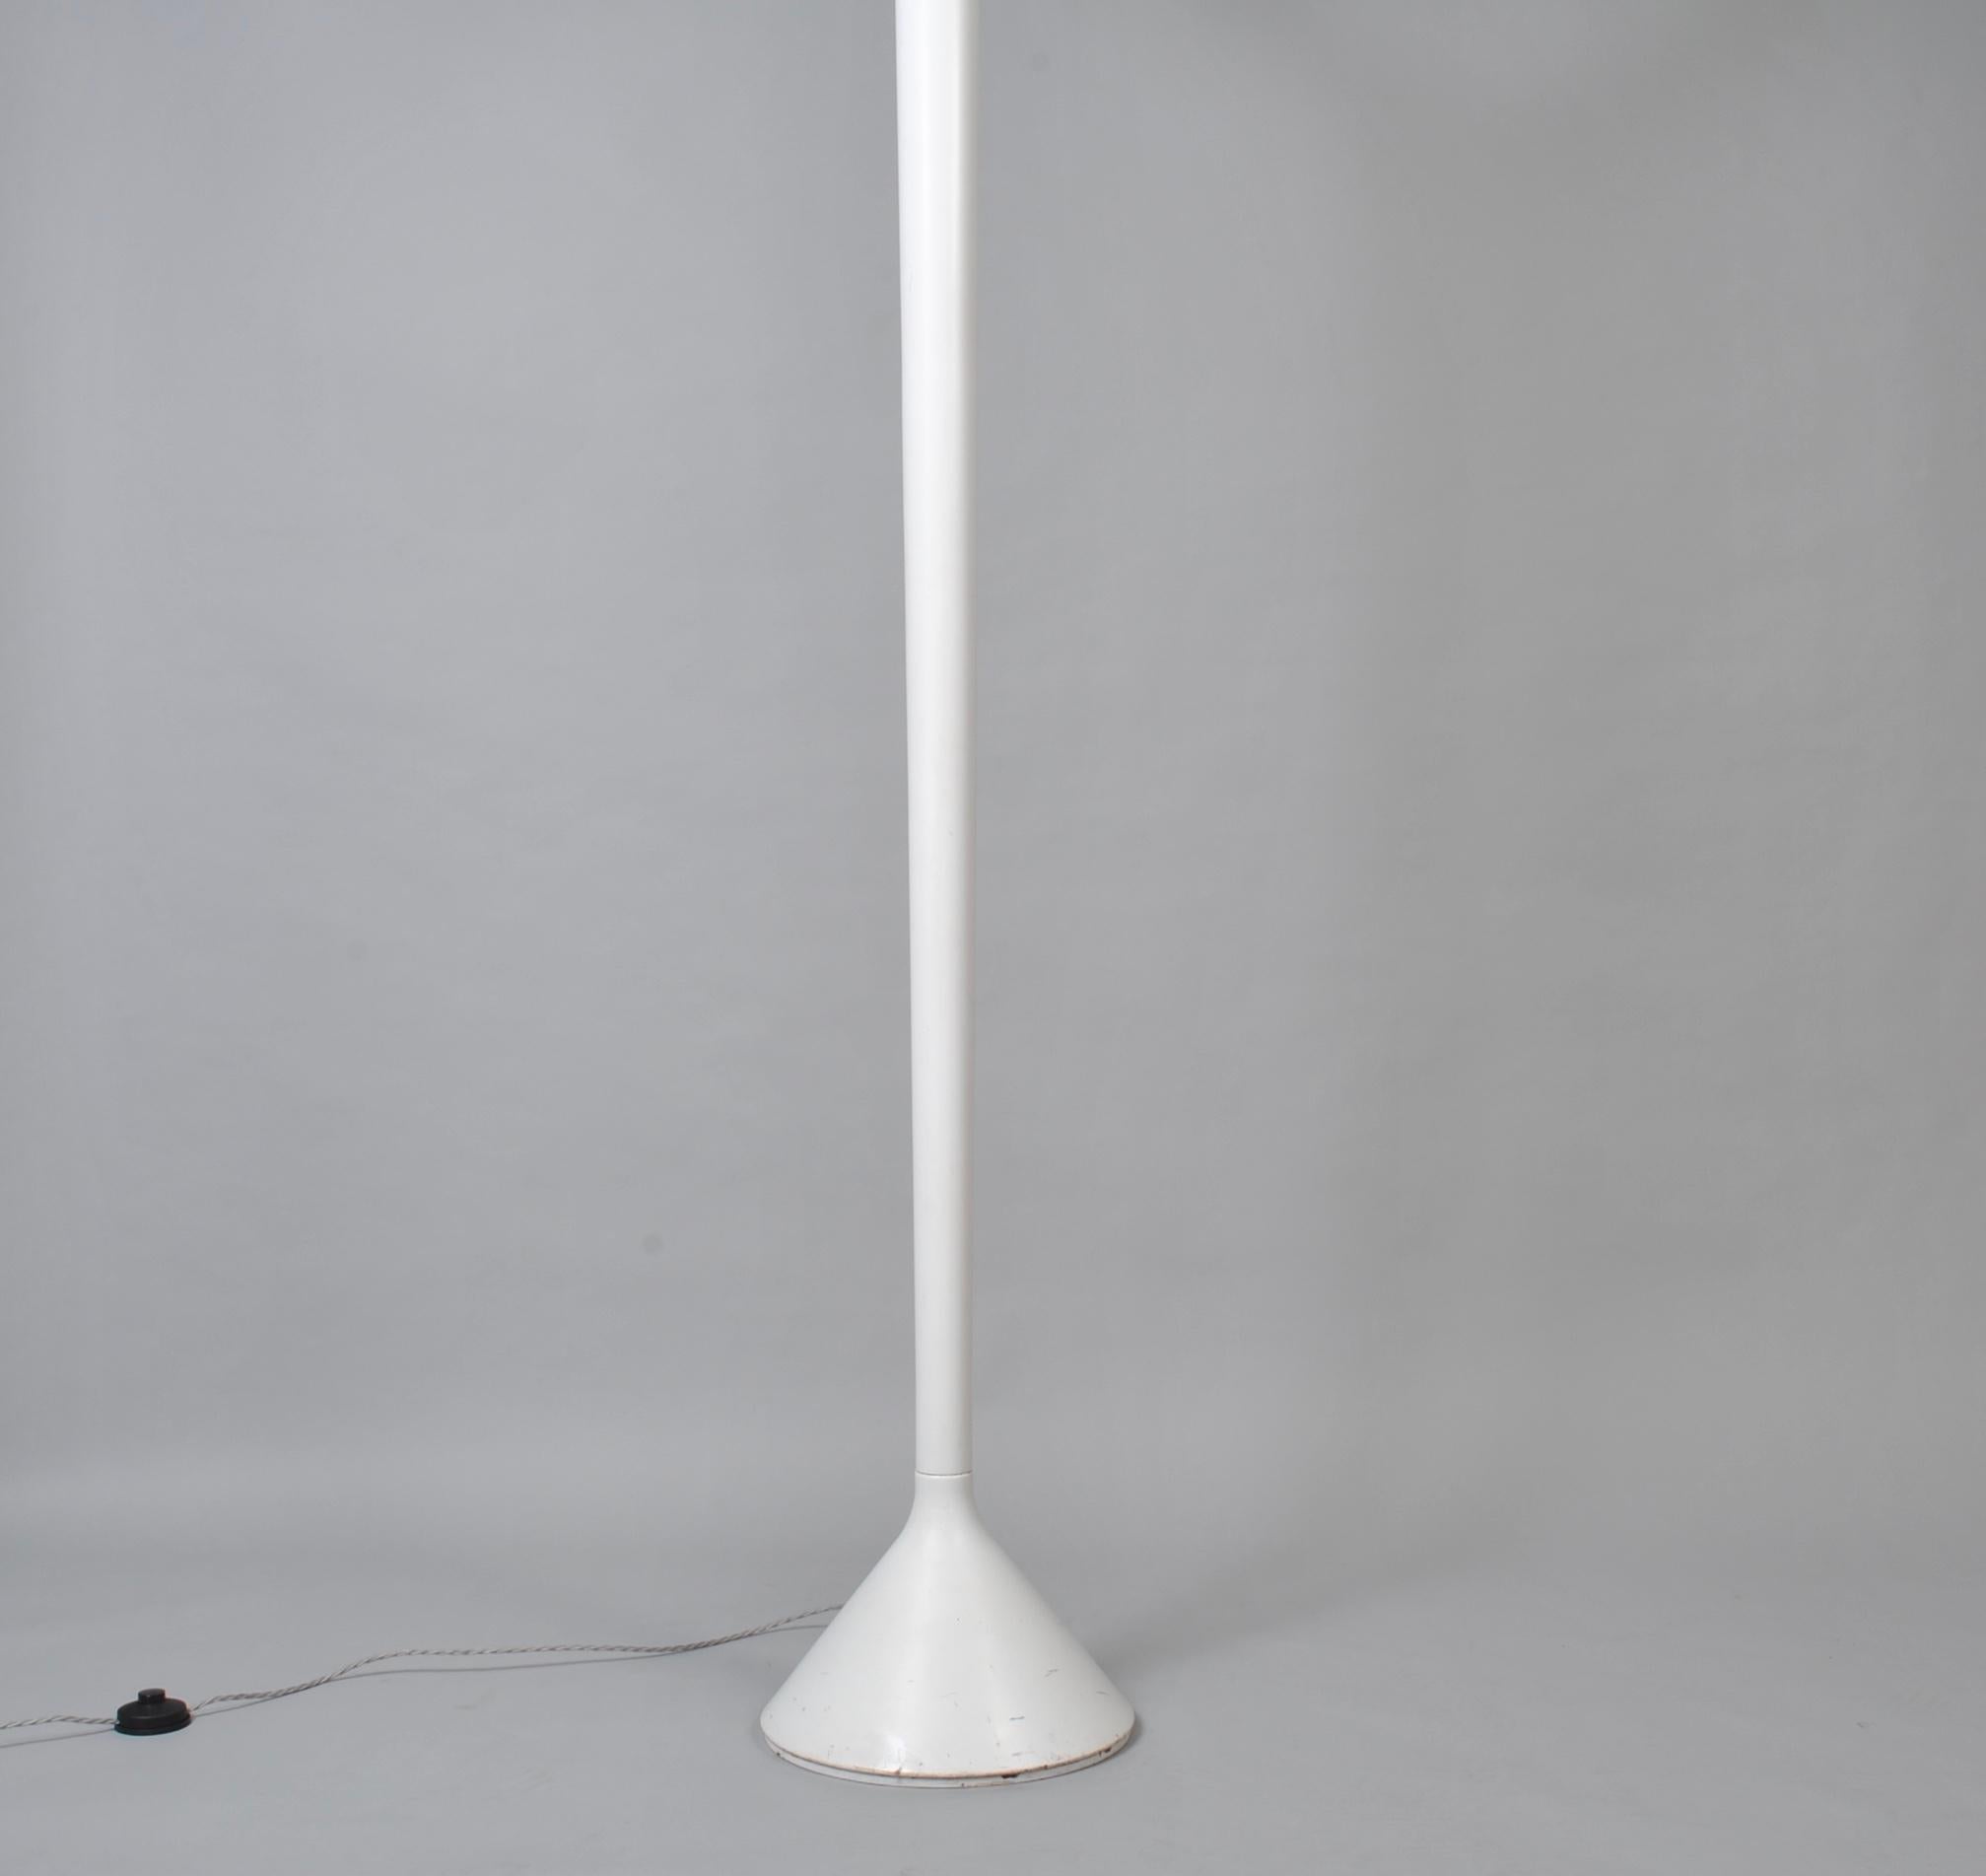 Steel Italian Modernist Floor Lamp, 1970s For Sale